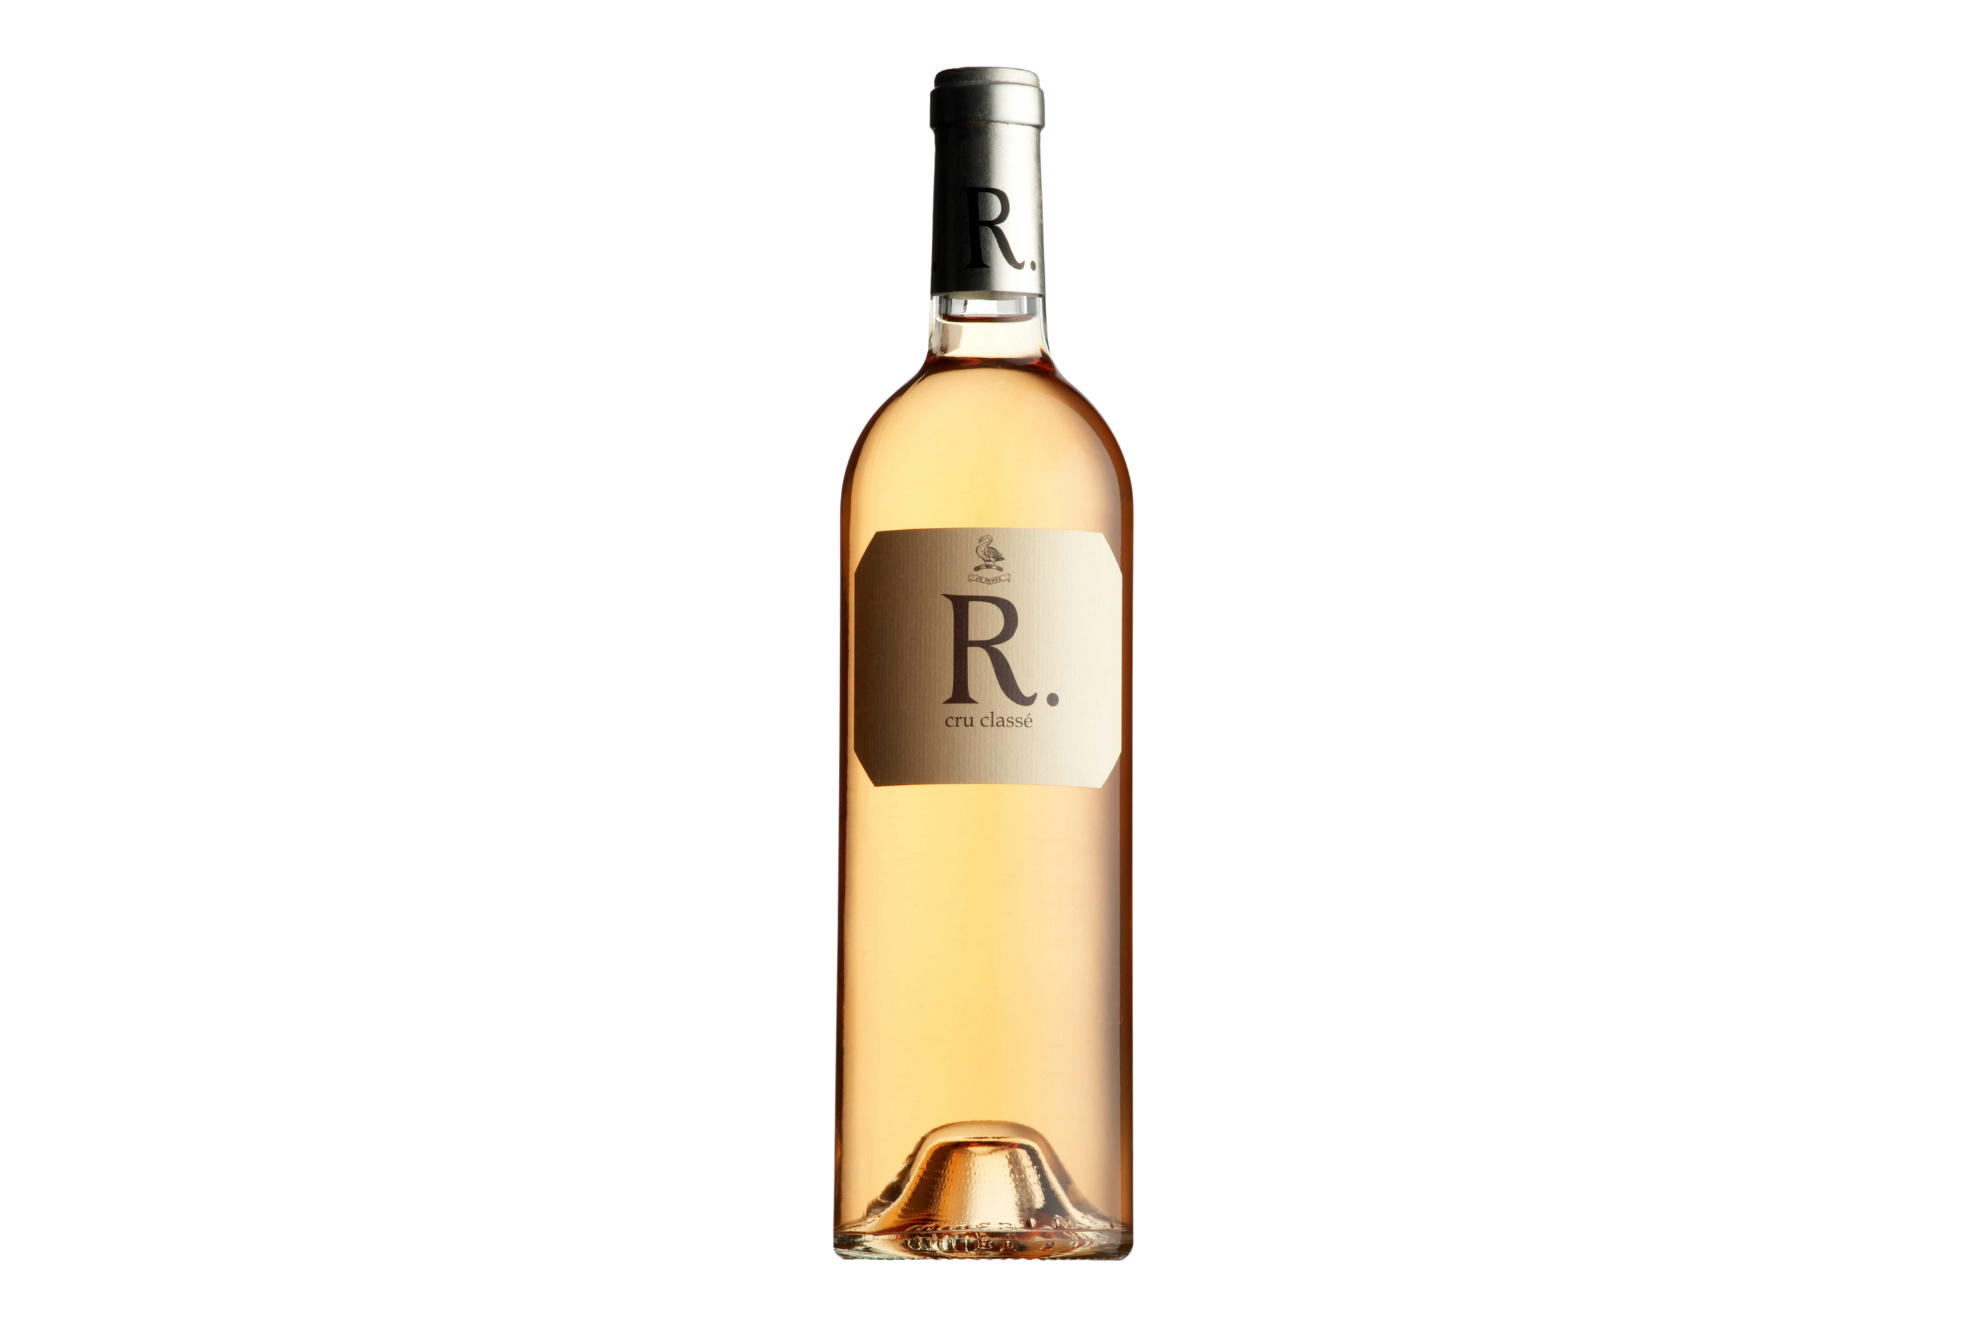 Rimauresq R Rose (Cru Classe) Cotes du Provence 2020